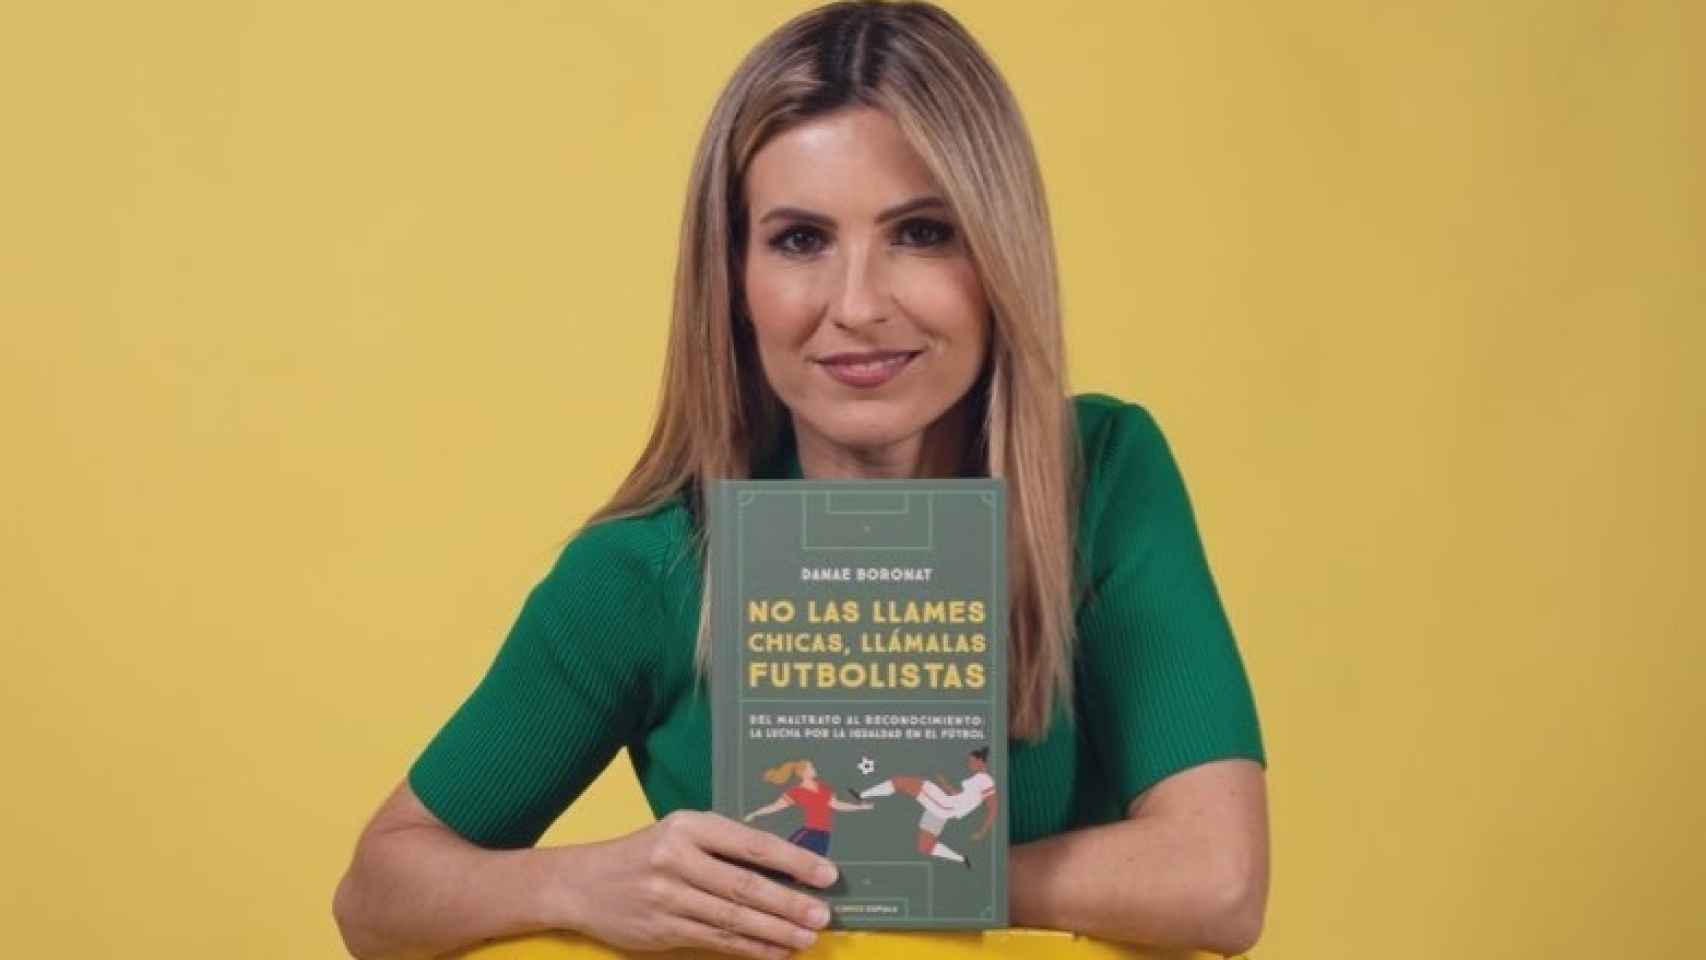 Danae Boronat con su libro 'No las llames chicas, llámalas futbolistas'